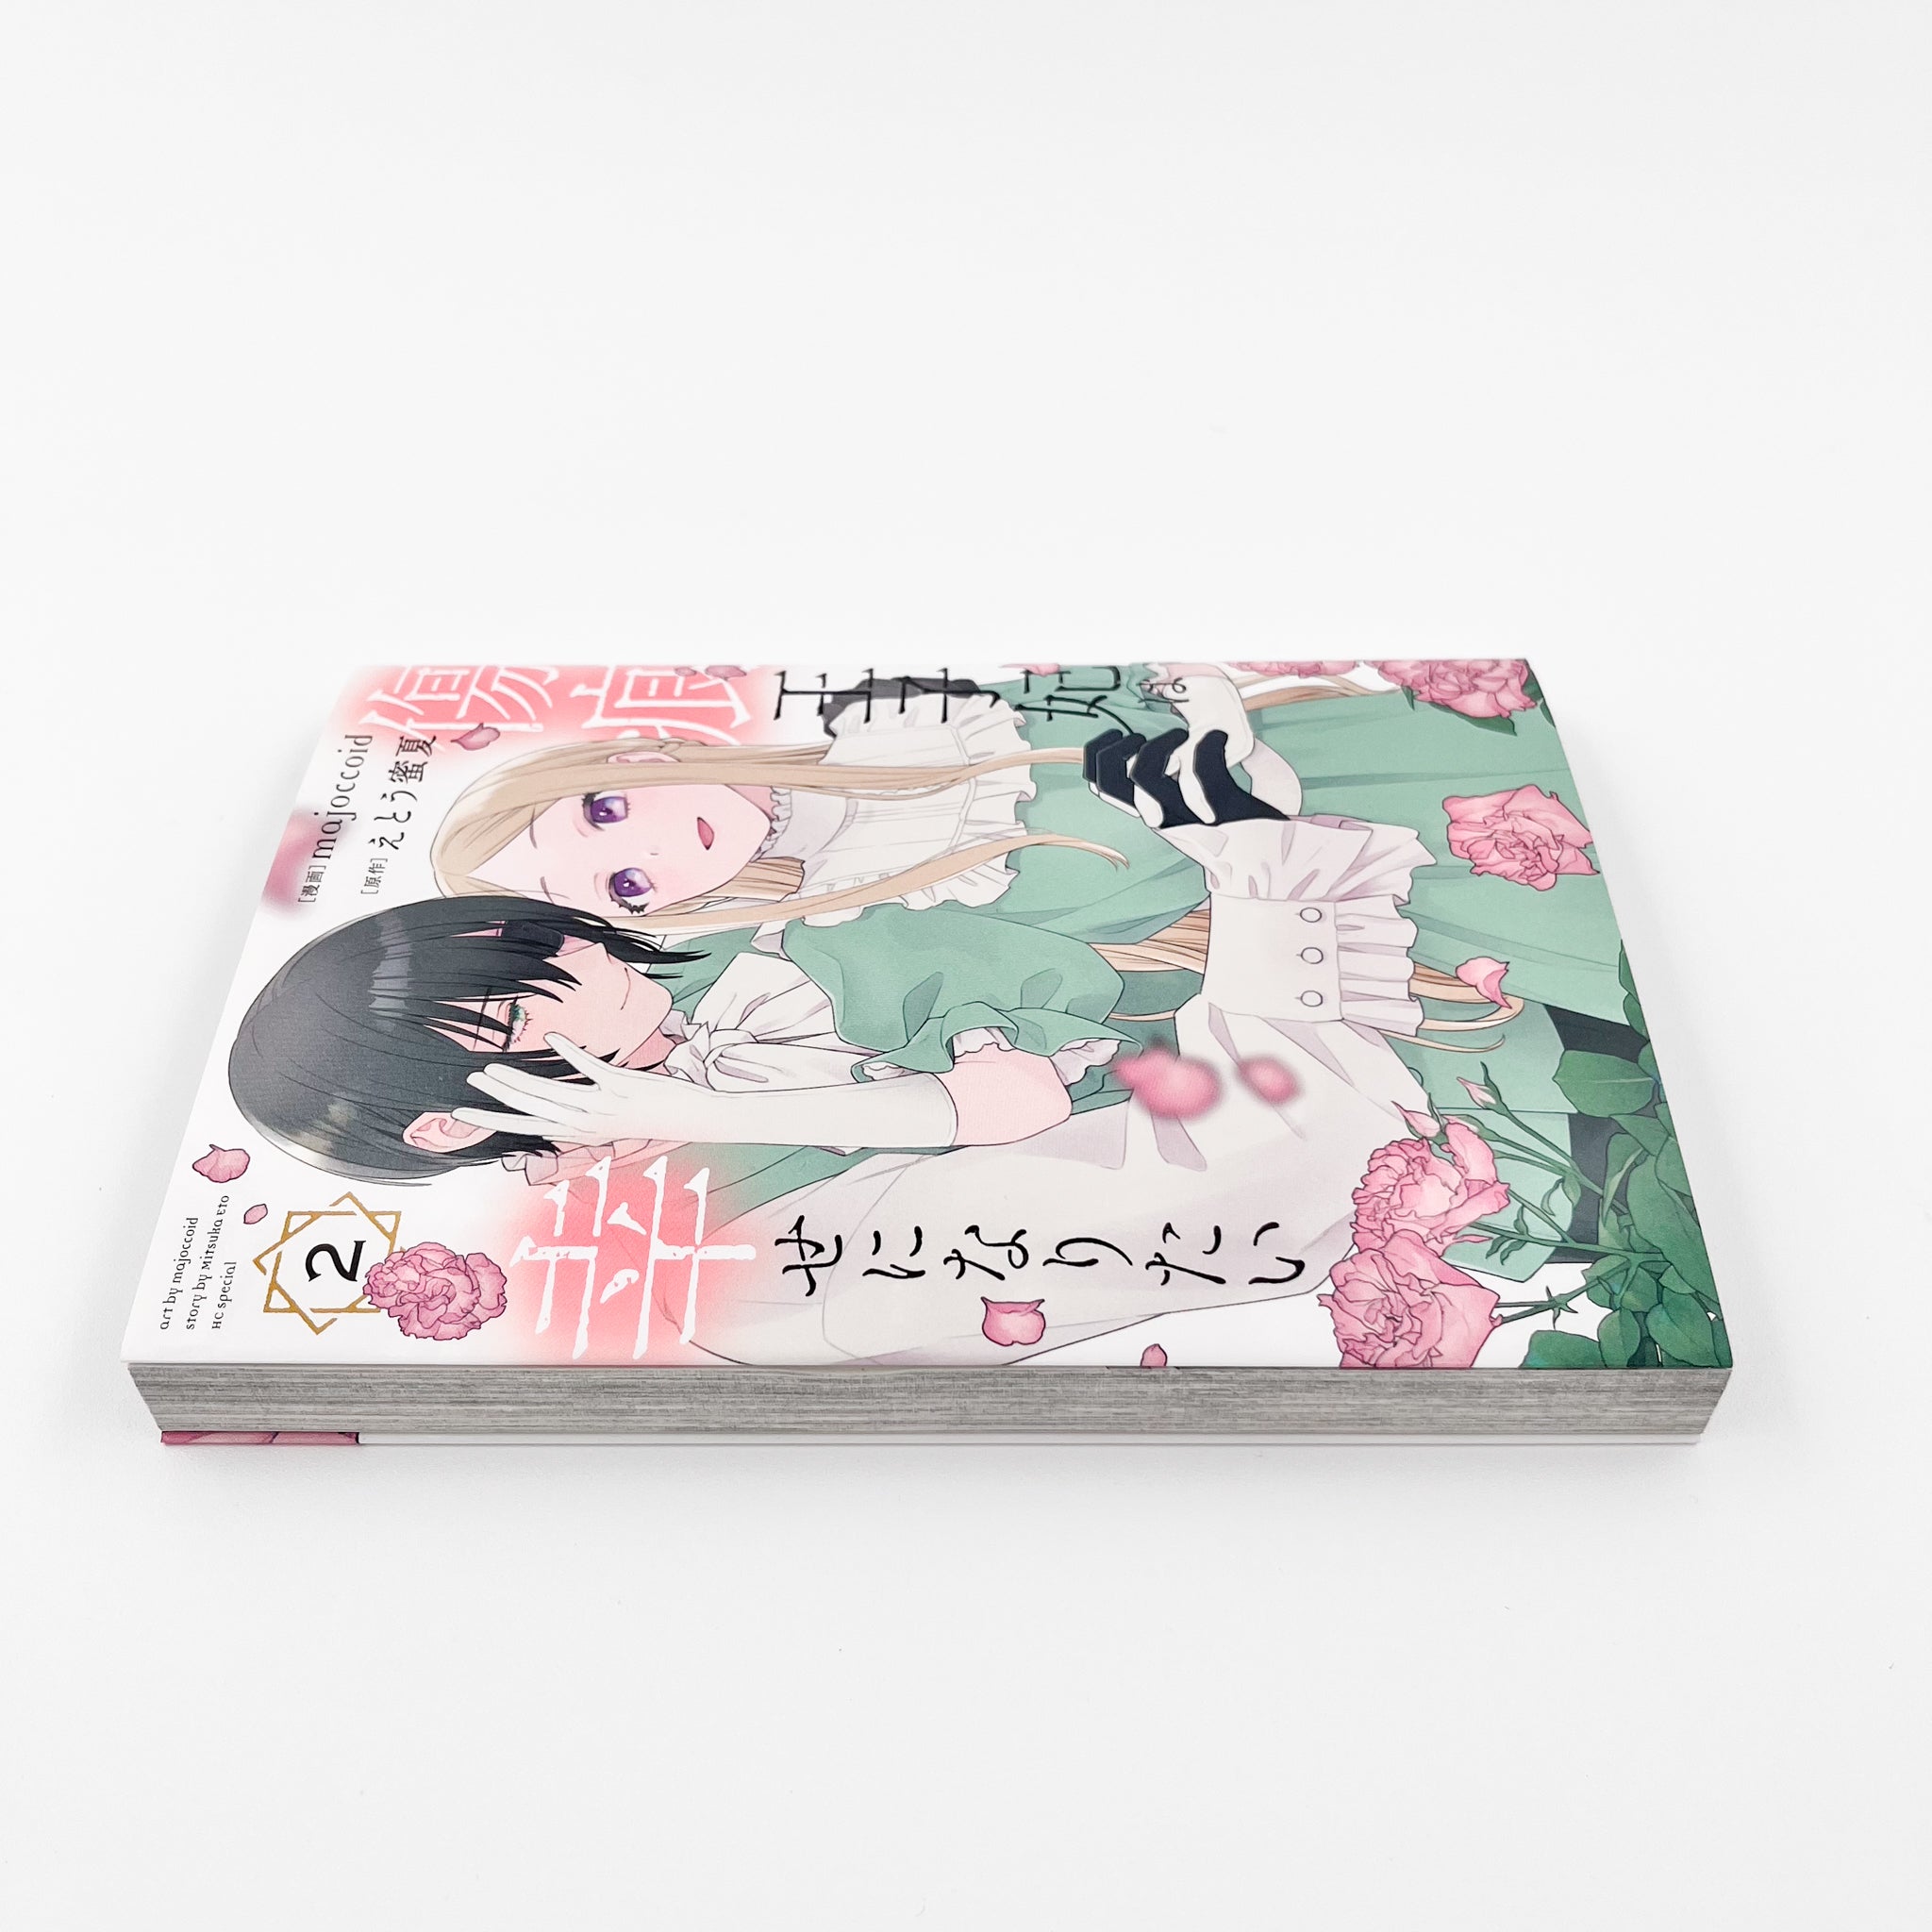 Kizuato Ouji Hi wa Shiawase ni naritai volume 2 side view